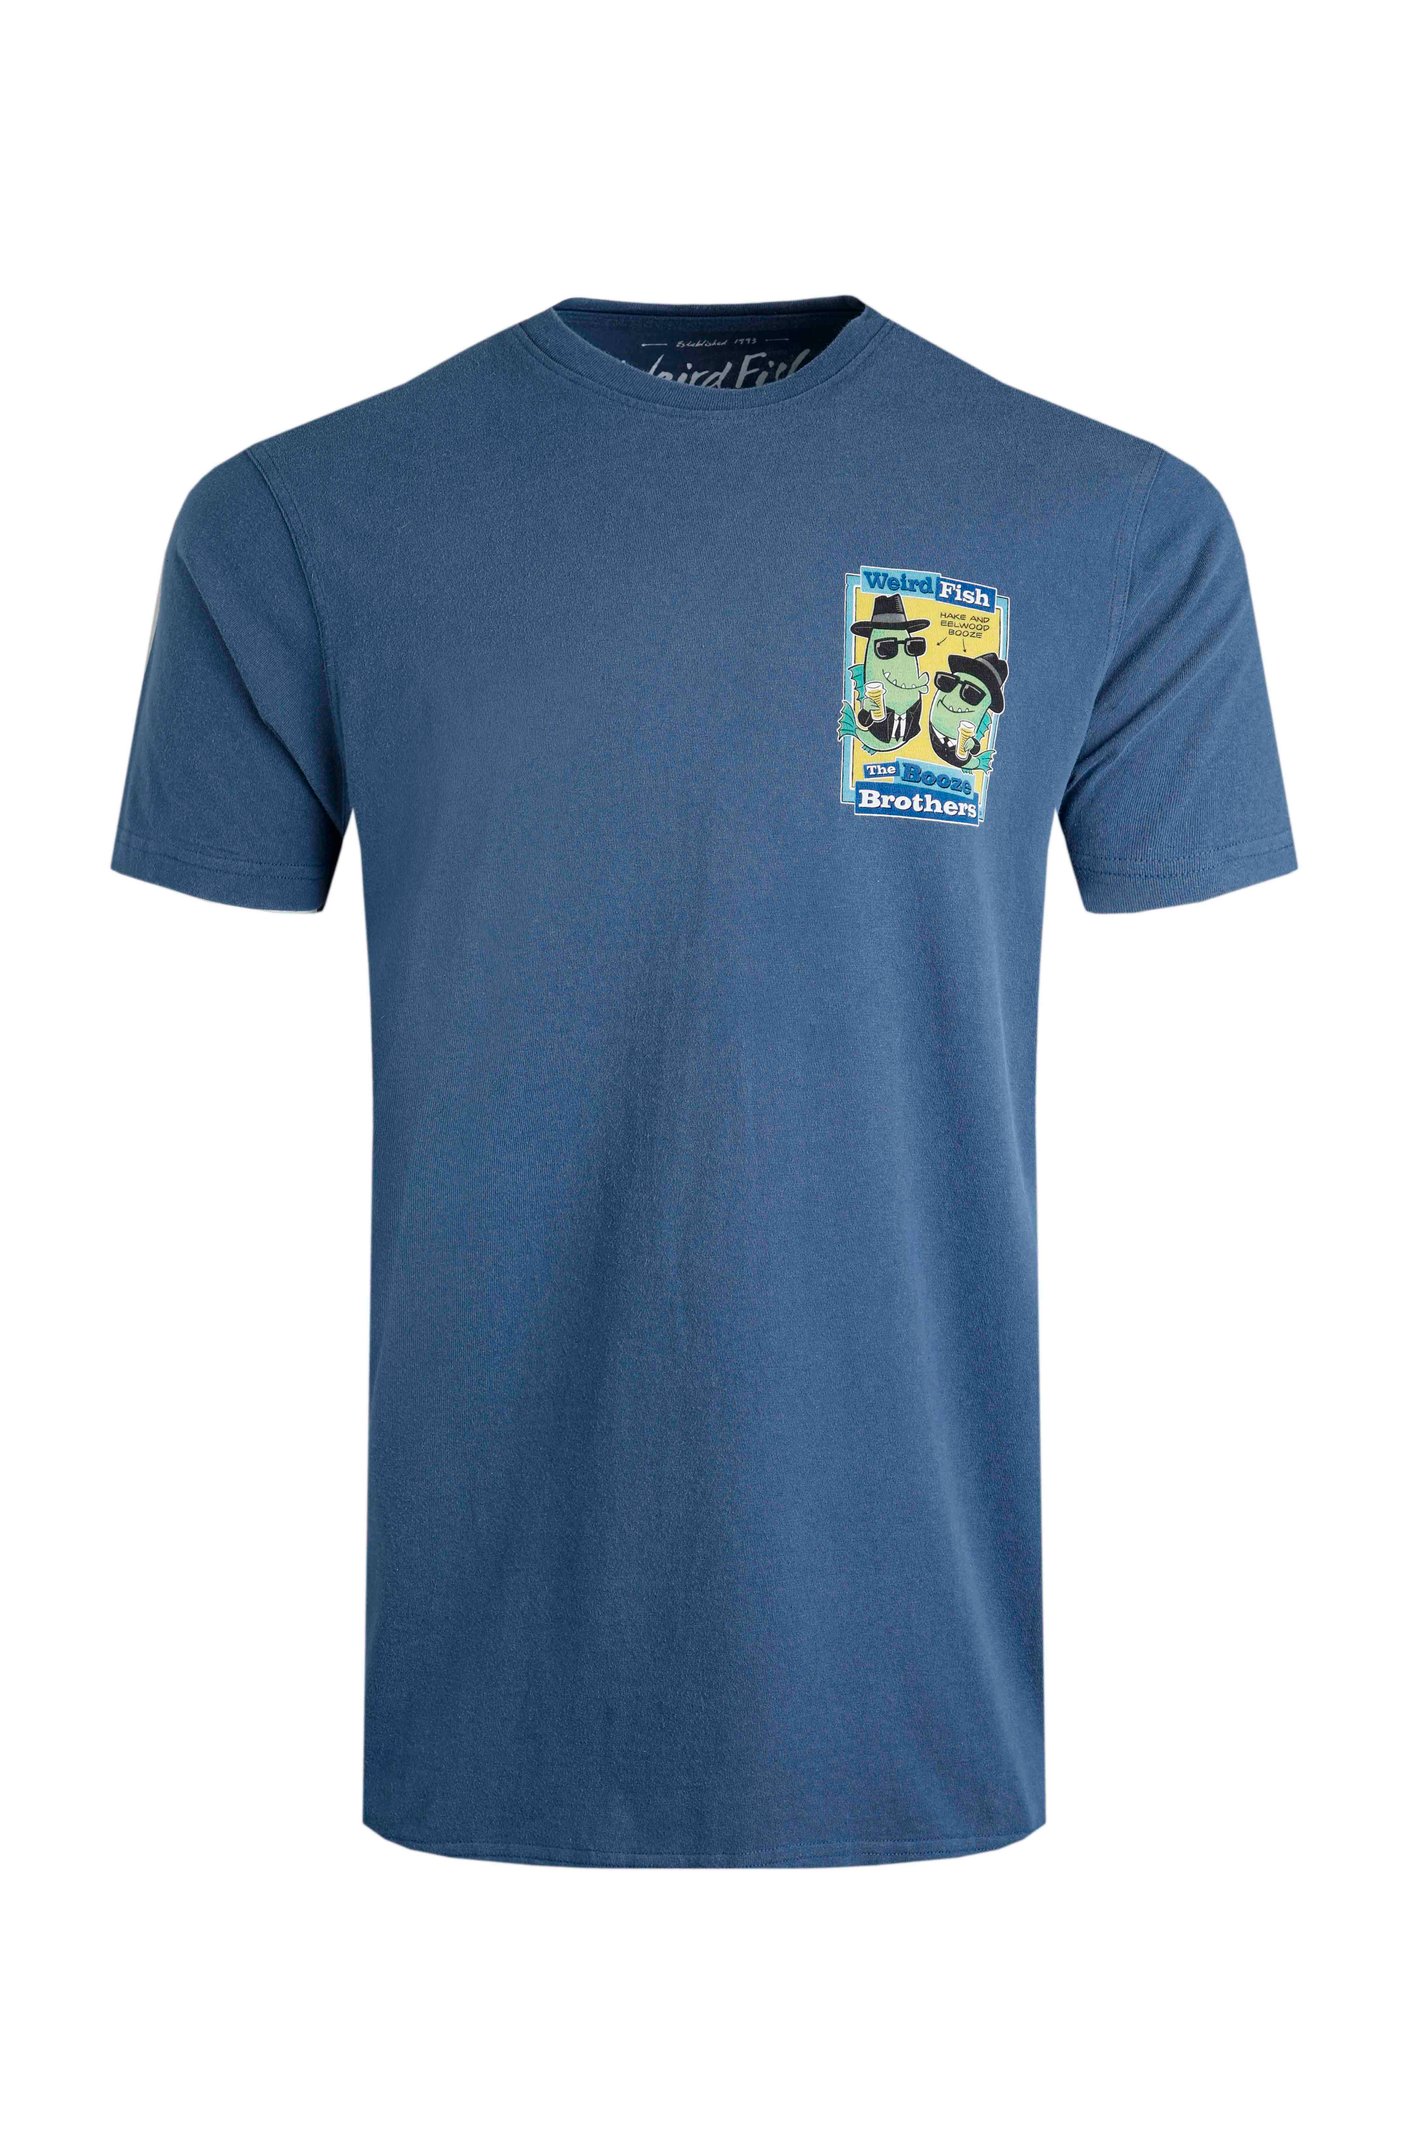 Weird Fish Booze Brothers Artist T-Shirt Ensign Blue Size 2XL